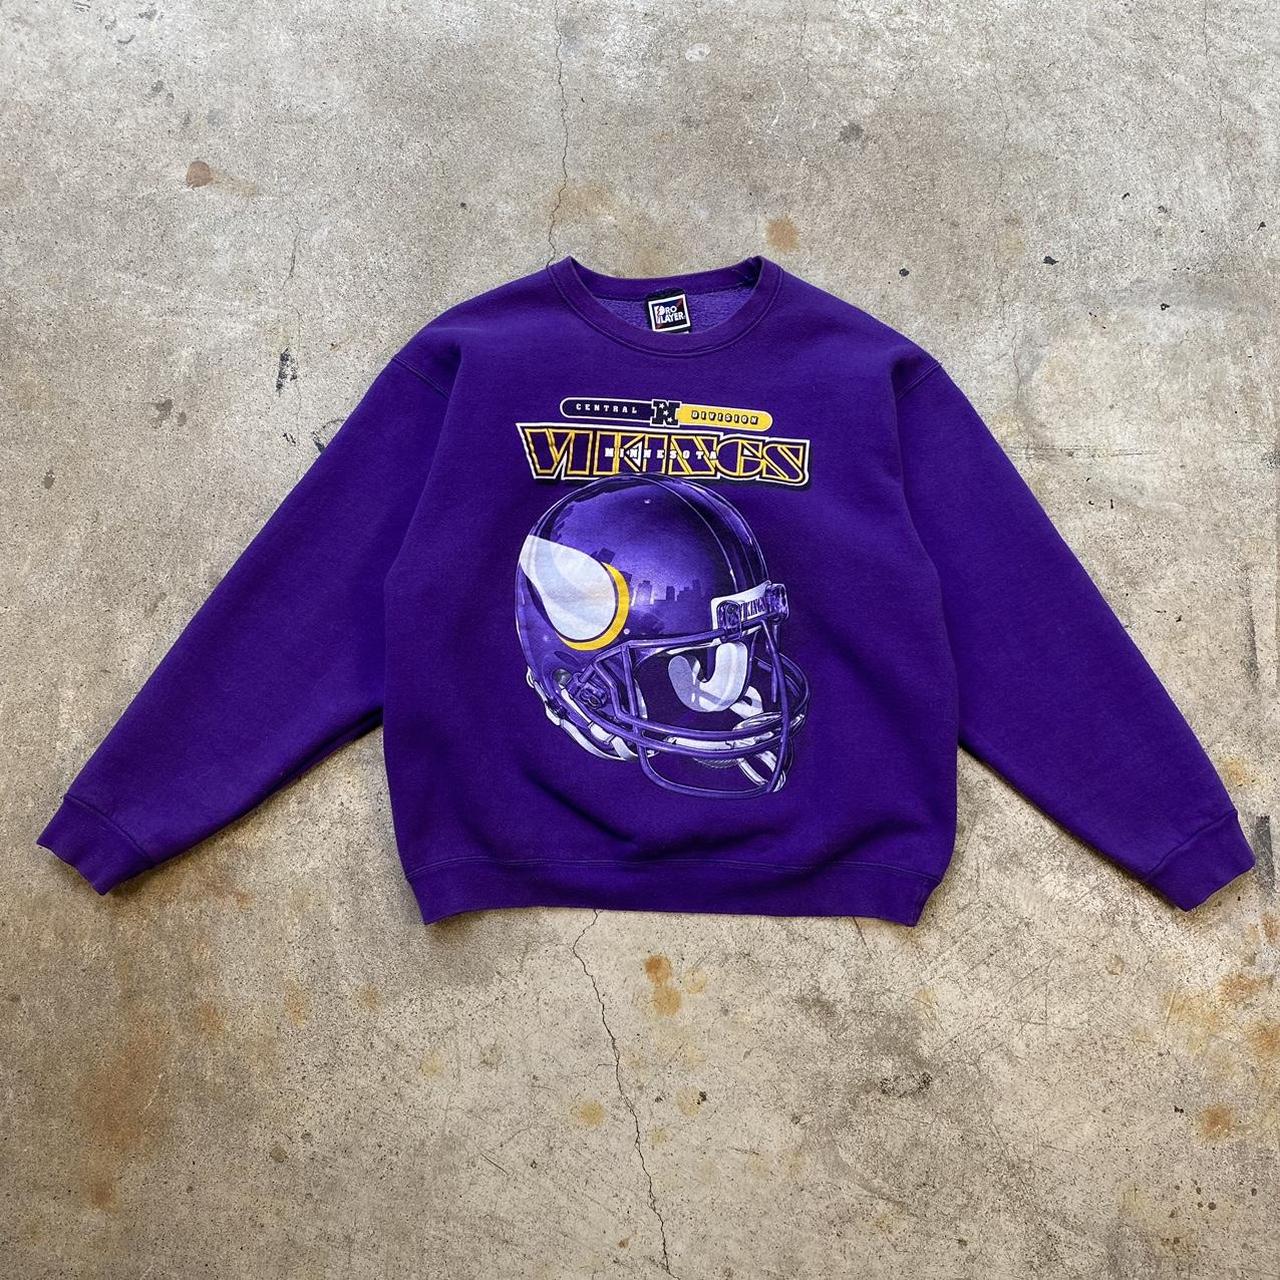 Vintage Minnesota Vikings sweatshirt In good - Depop